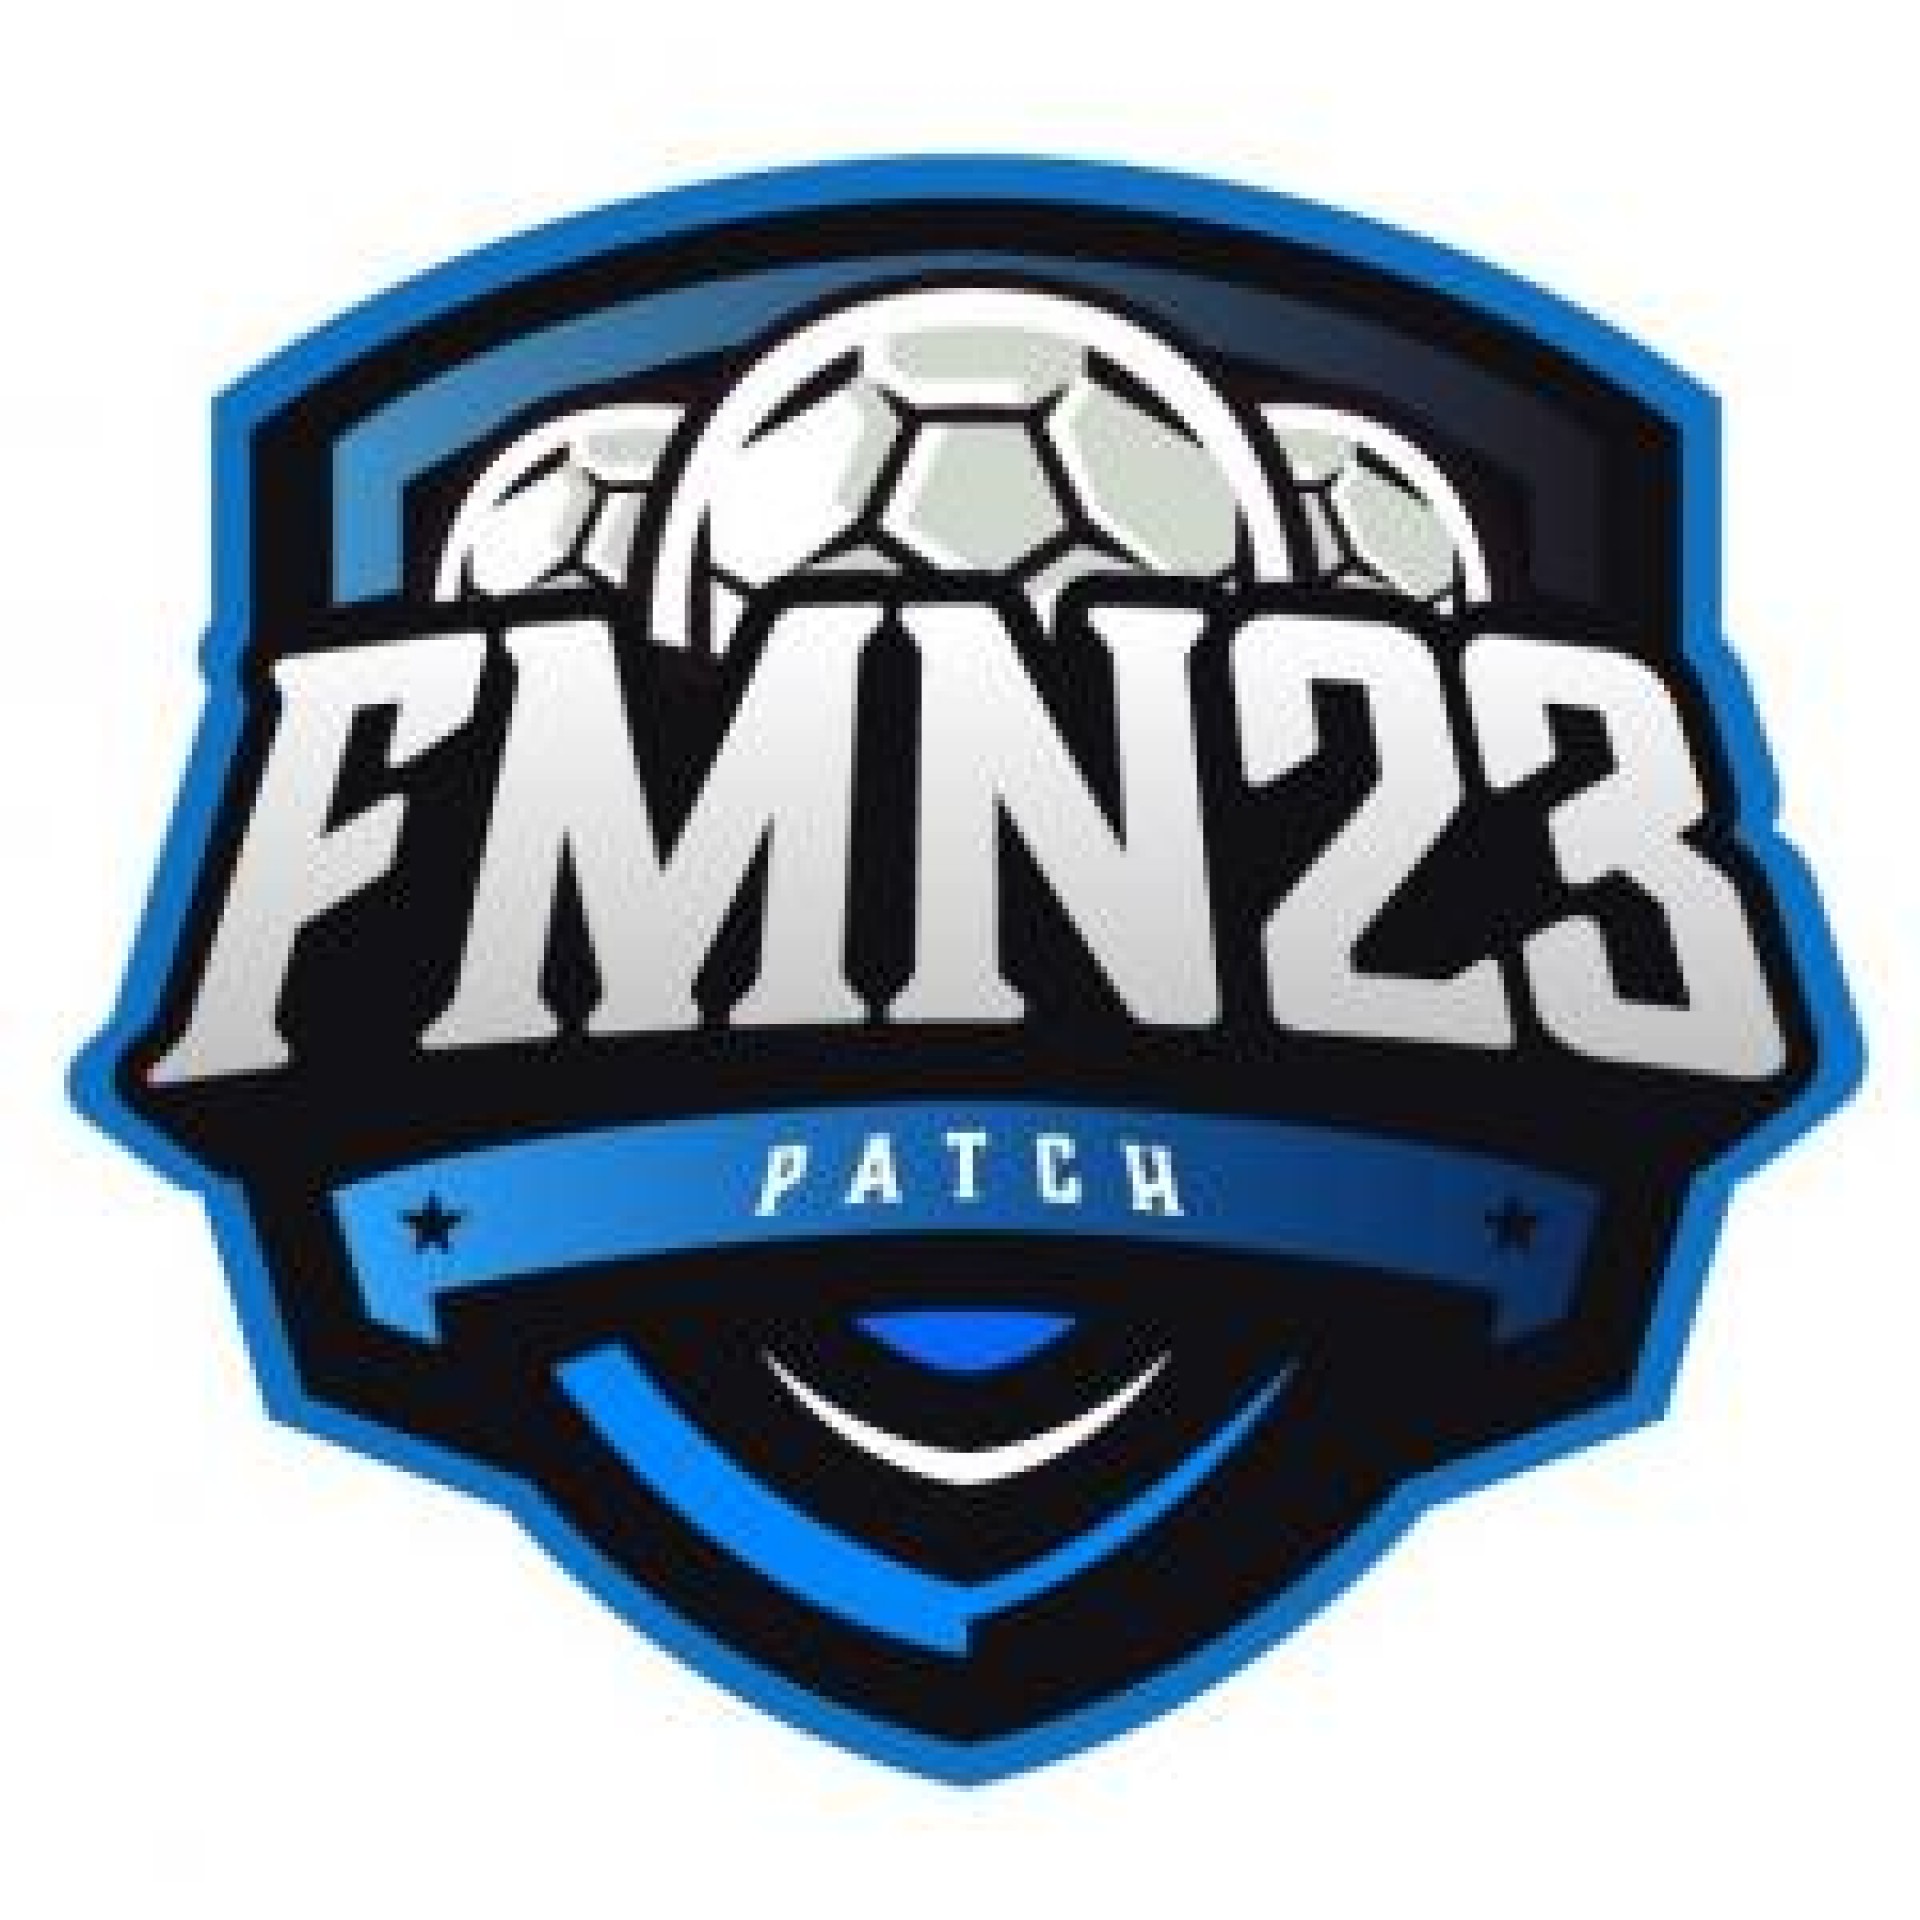 FMN 23 - Patch para FIFA 23 PC - Suporte e atualizações por 5 meses